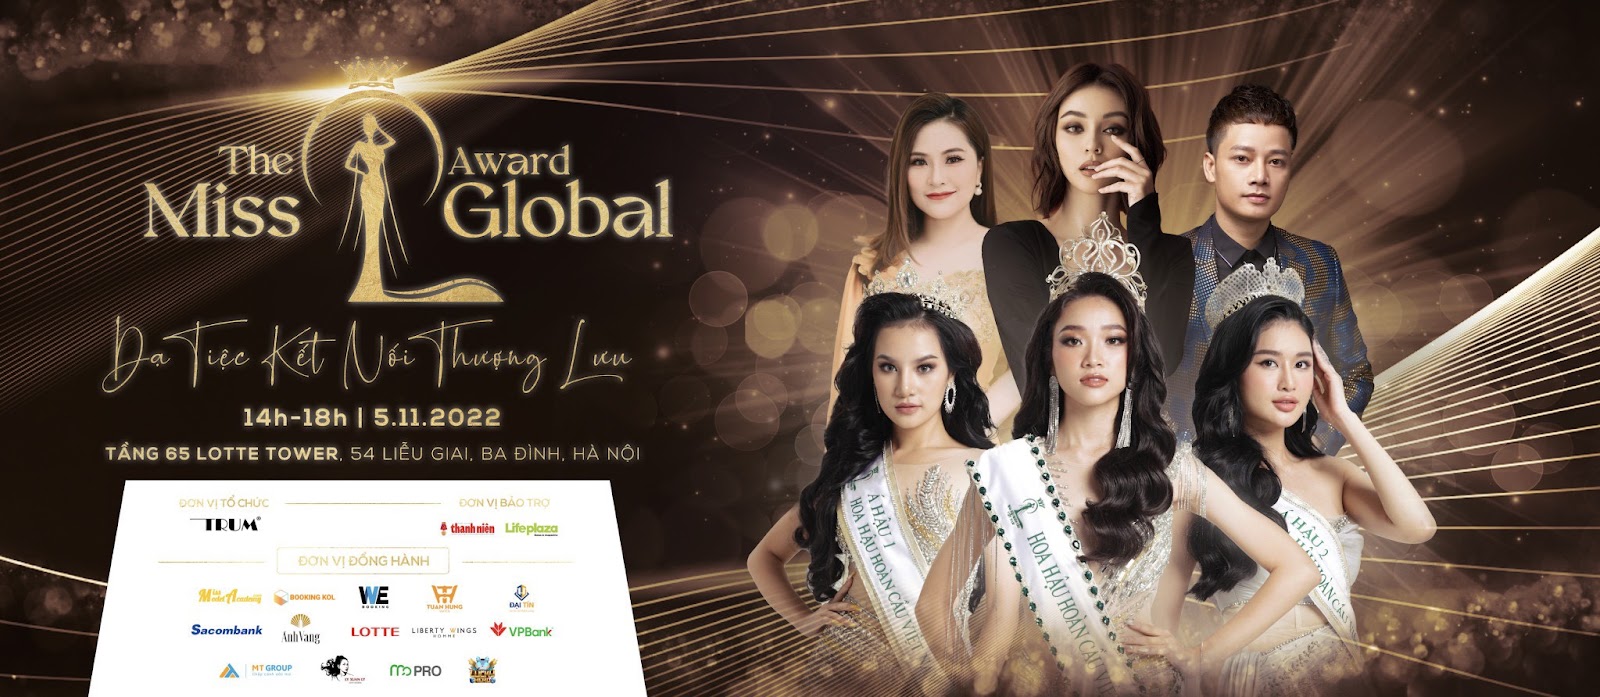 The Miss Global Award - Hà Nội [2022]